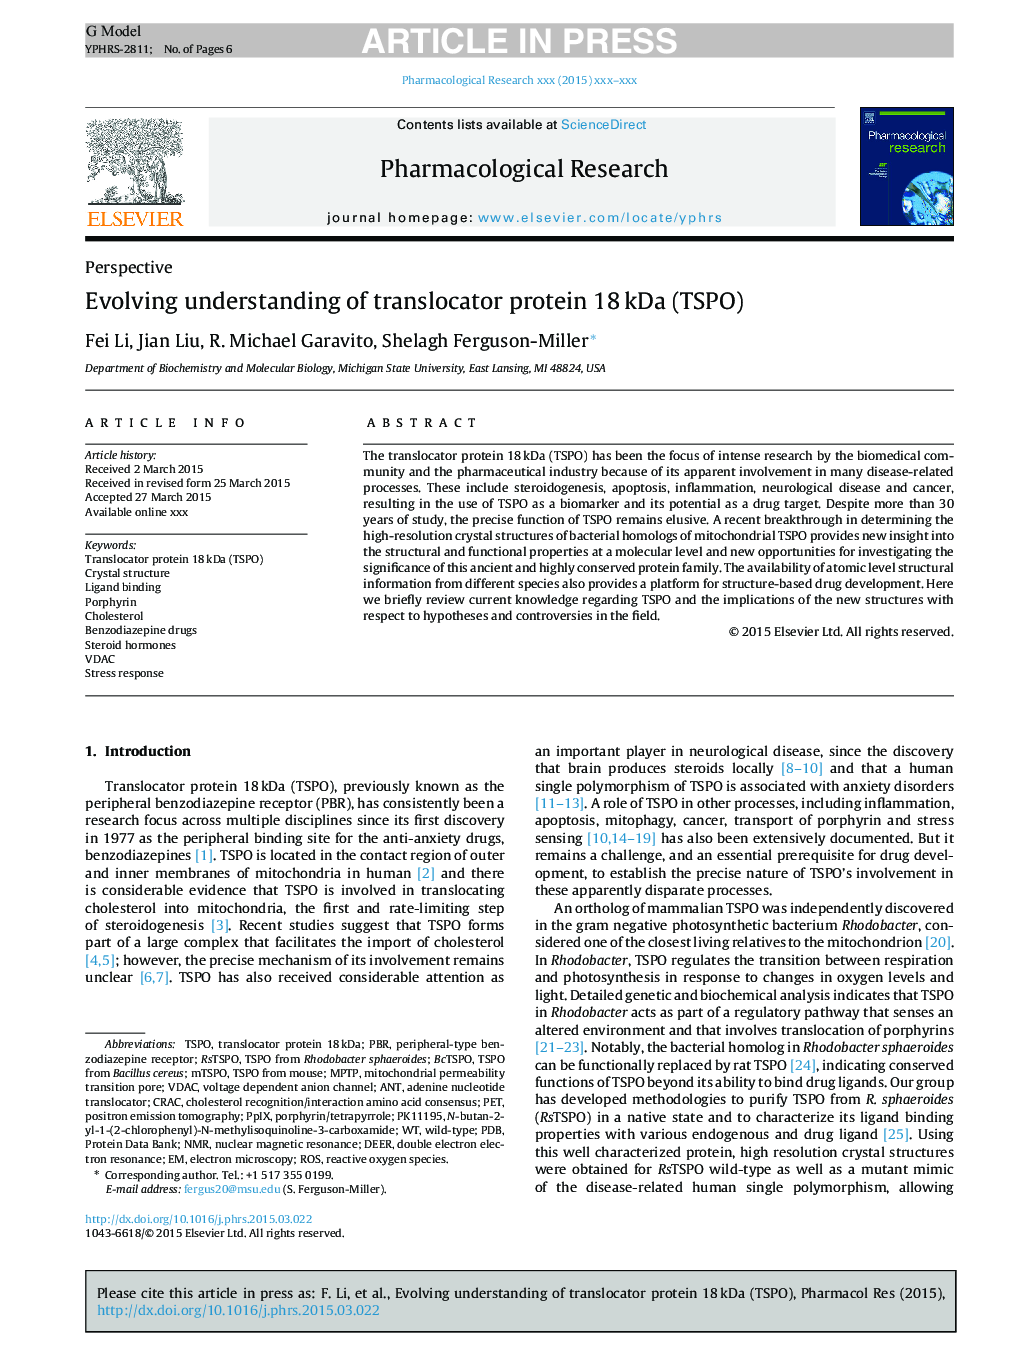 Evolving understanding of translocator protein 18Â kDa (TSPO)